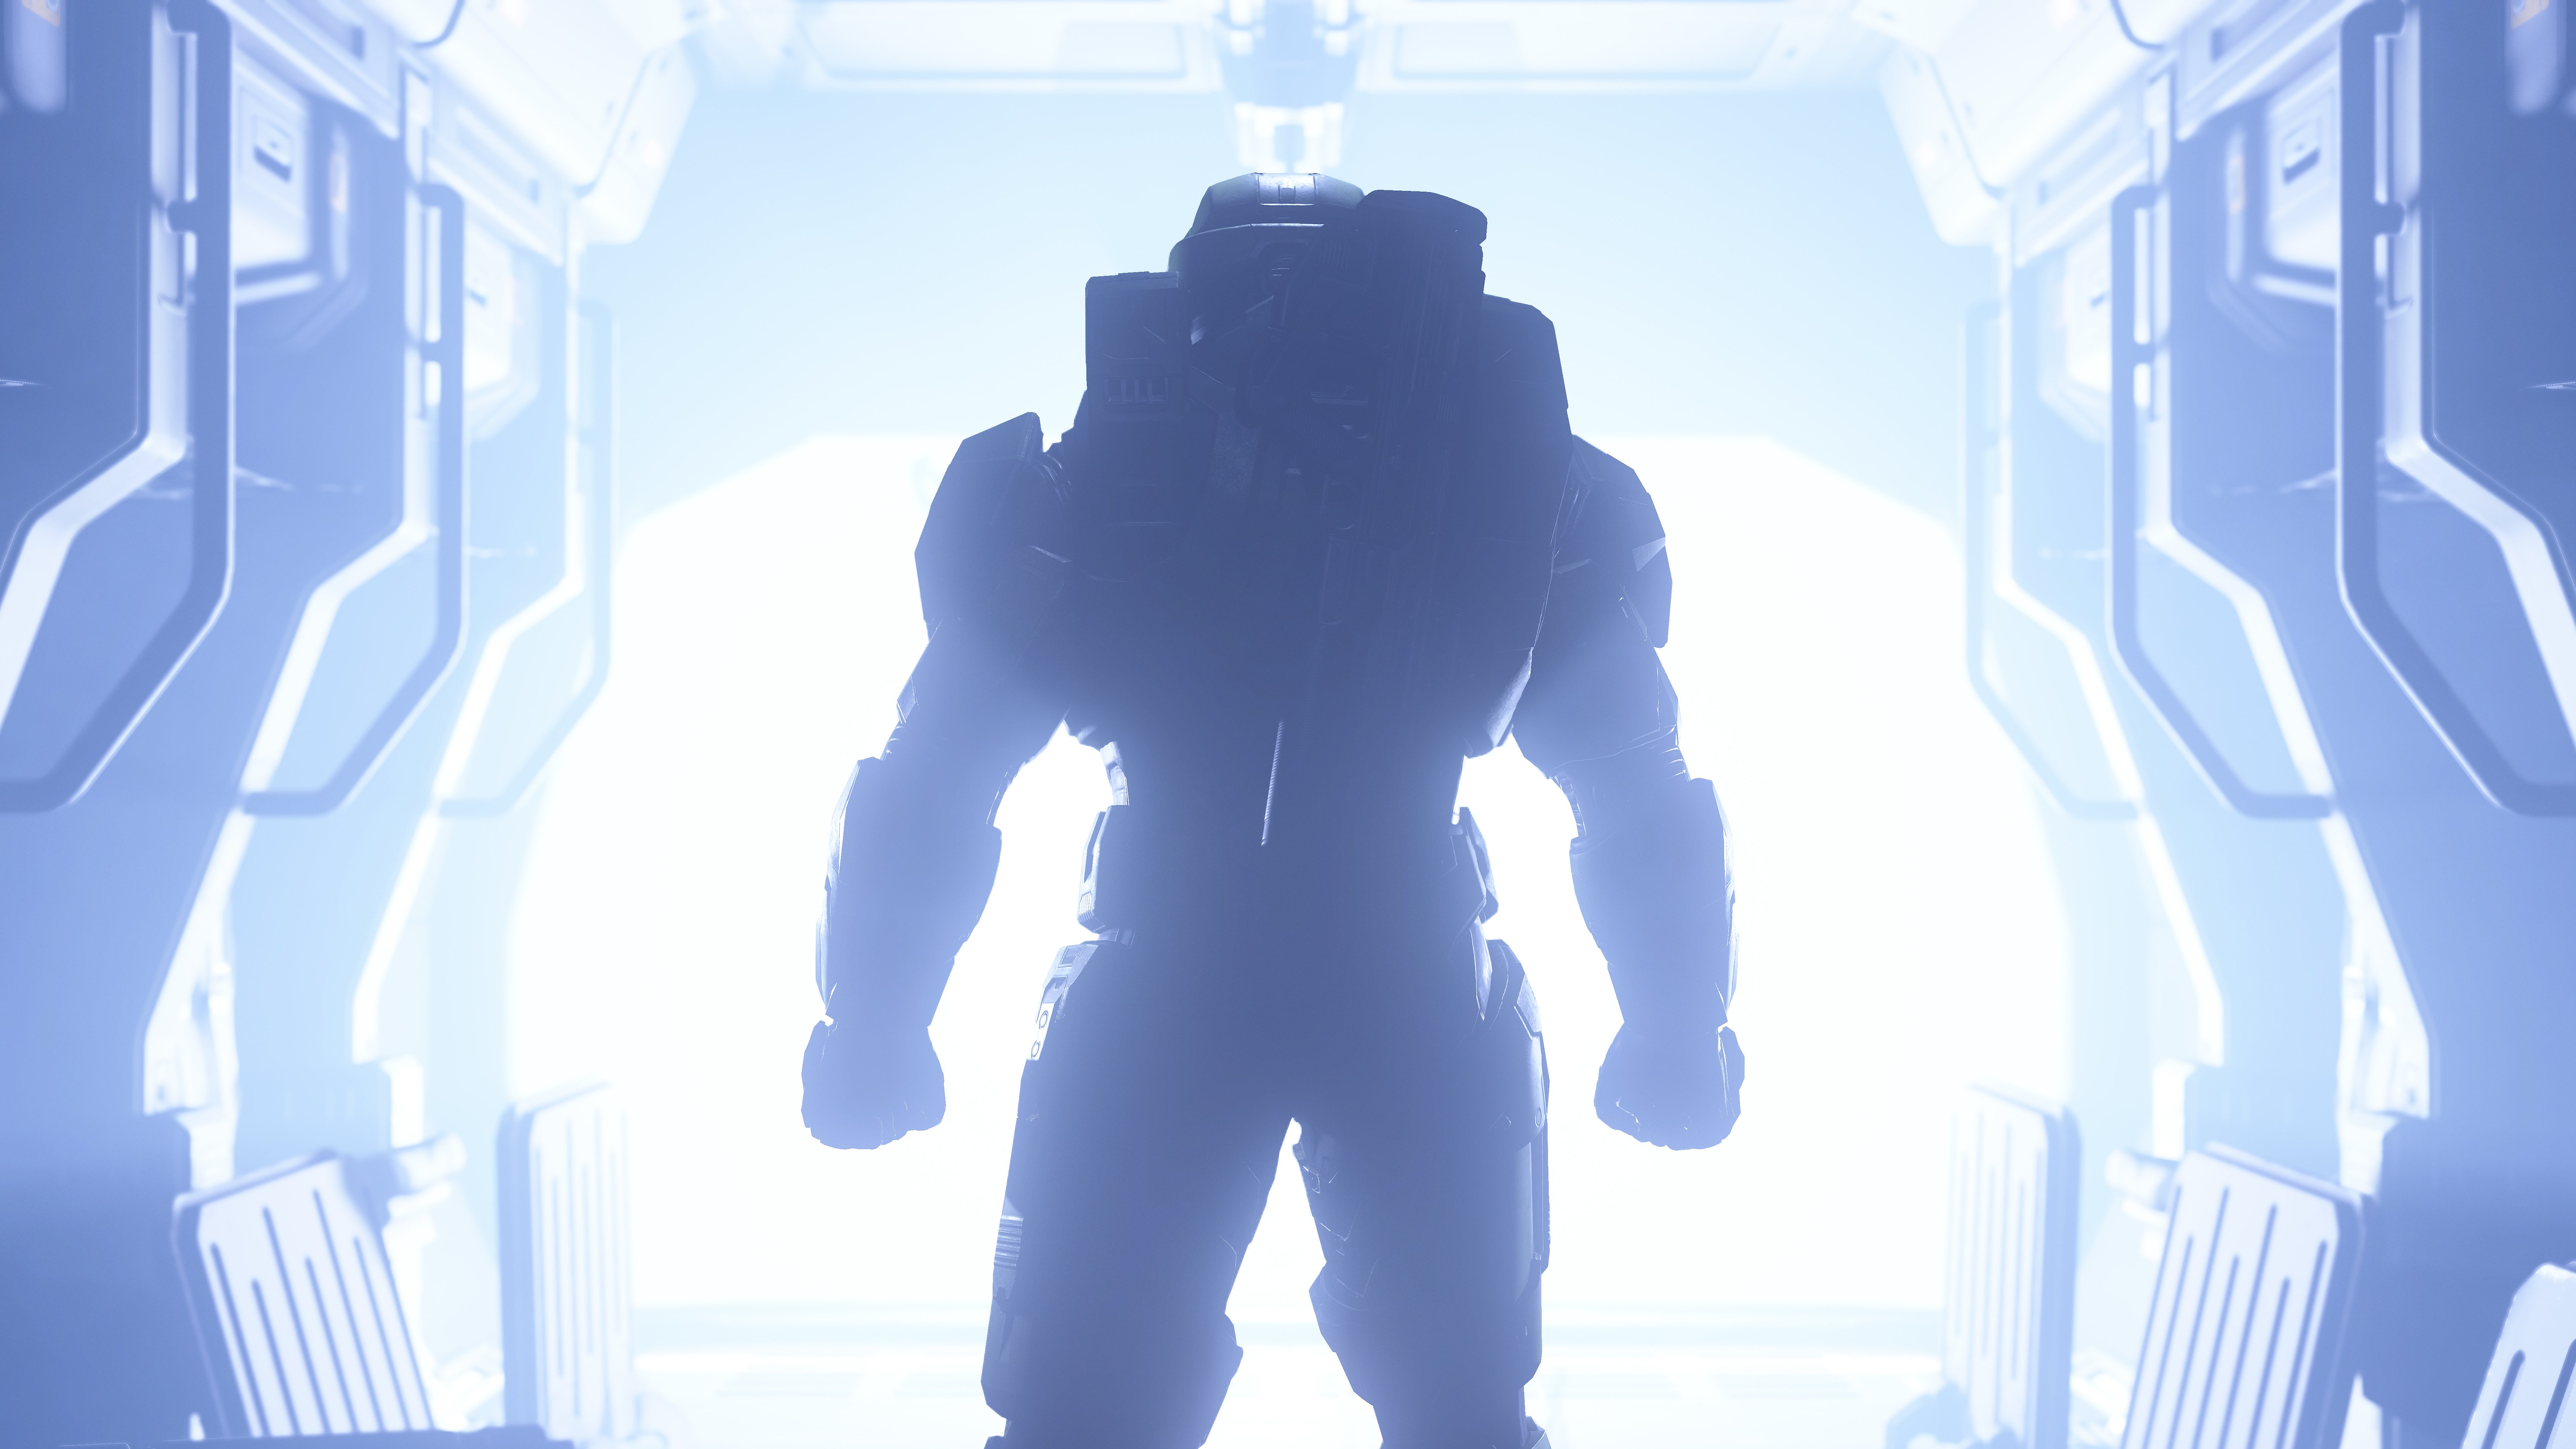 soldier silhouette under light